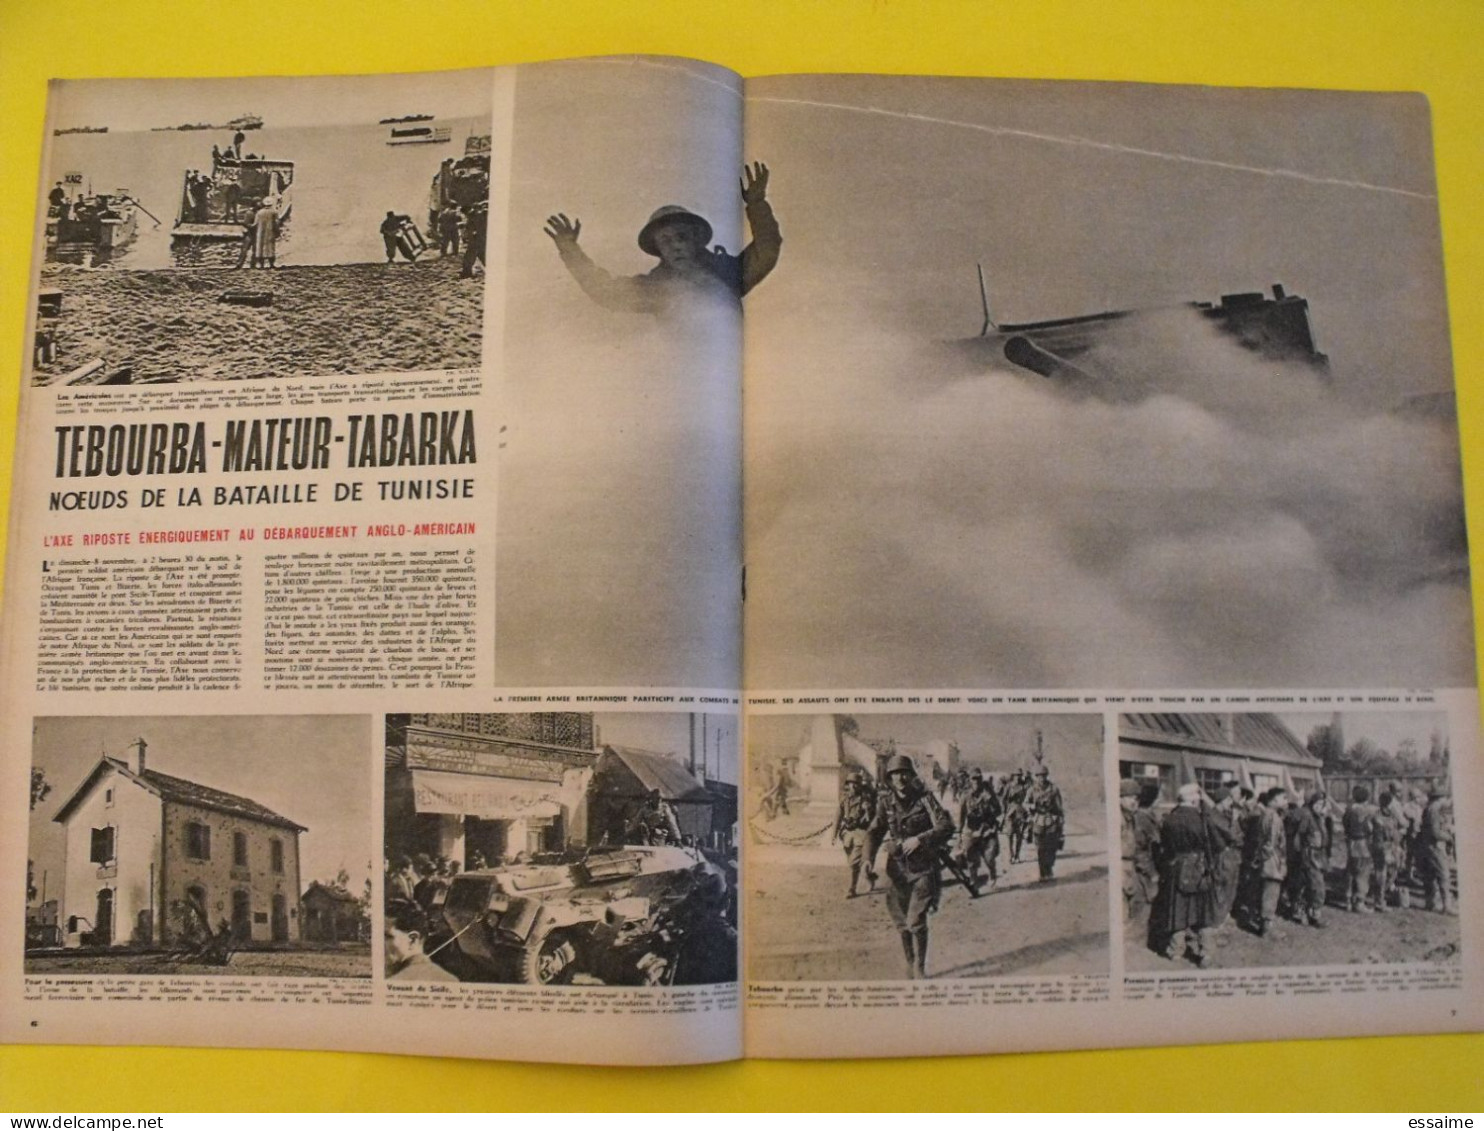 6 revues La semaine de 1942-1943. actualités guerre photos collaboration odette joyeux franco  birmanie berlin maroc